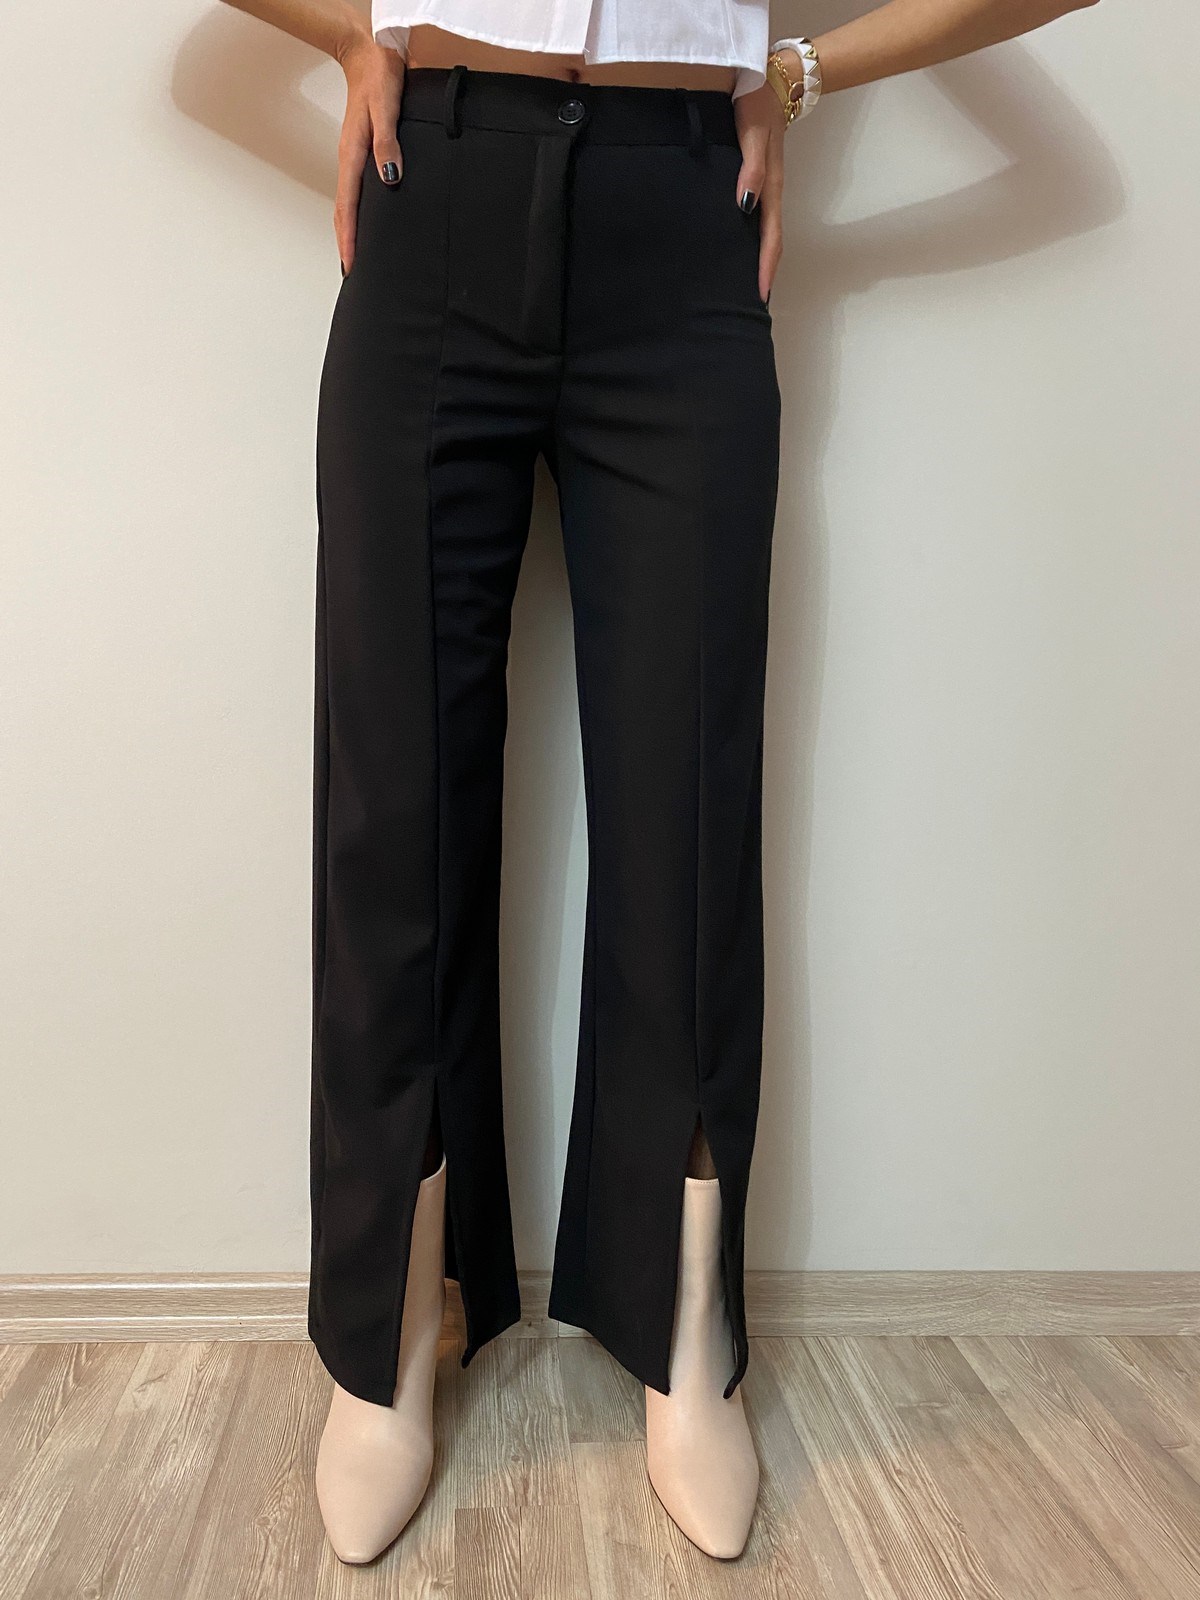 Kadın Siyah Paçası Yırtmaçlı Kumaş Pantolon